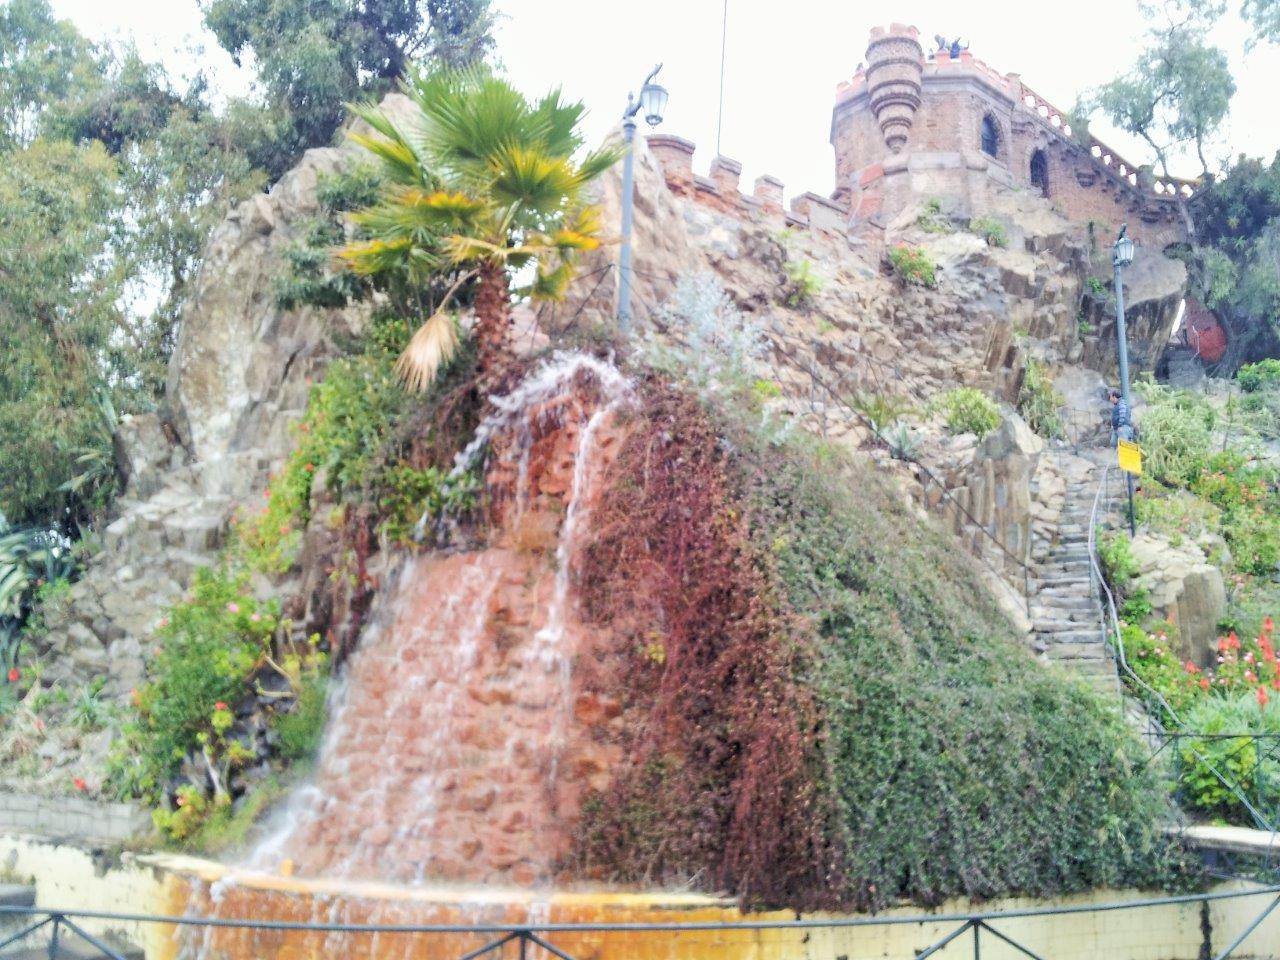 Cerro Santa Lucia